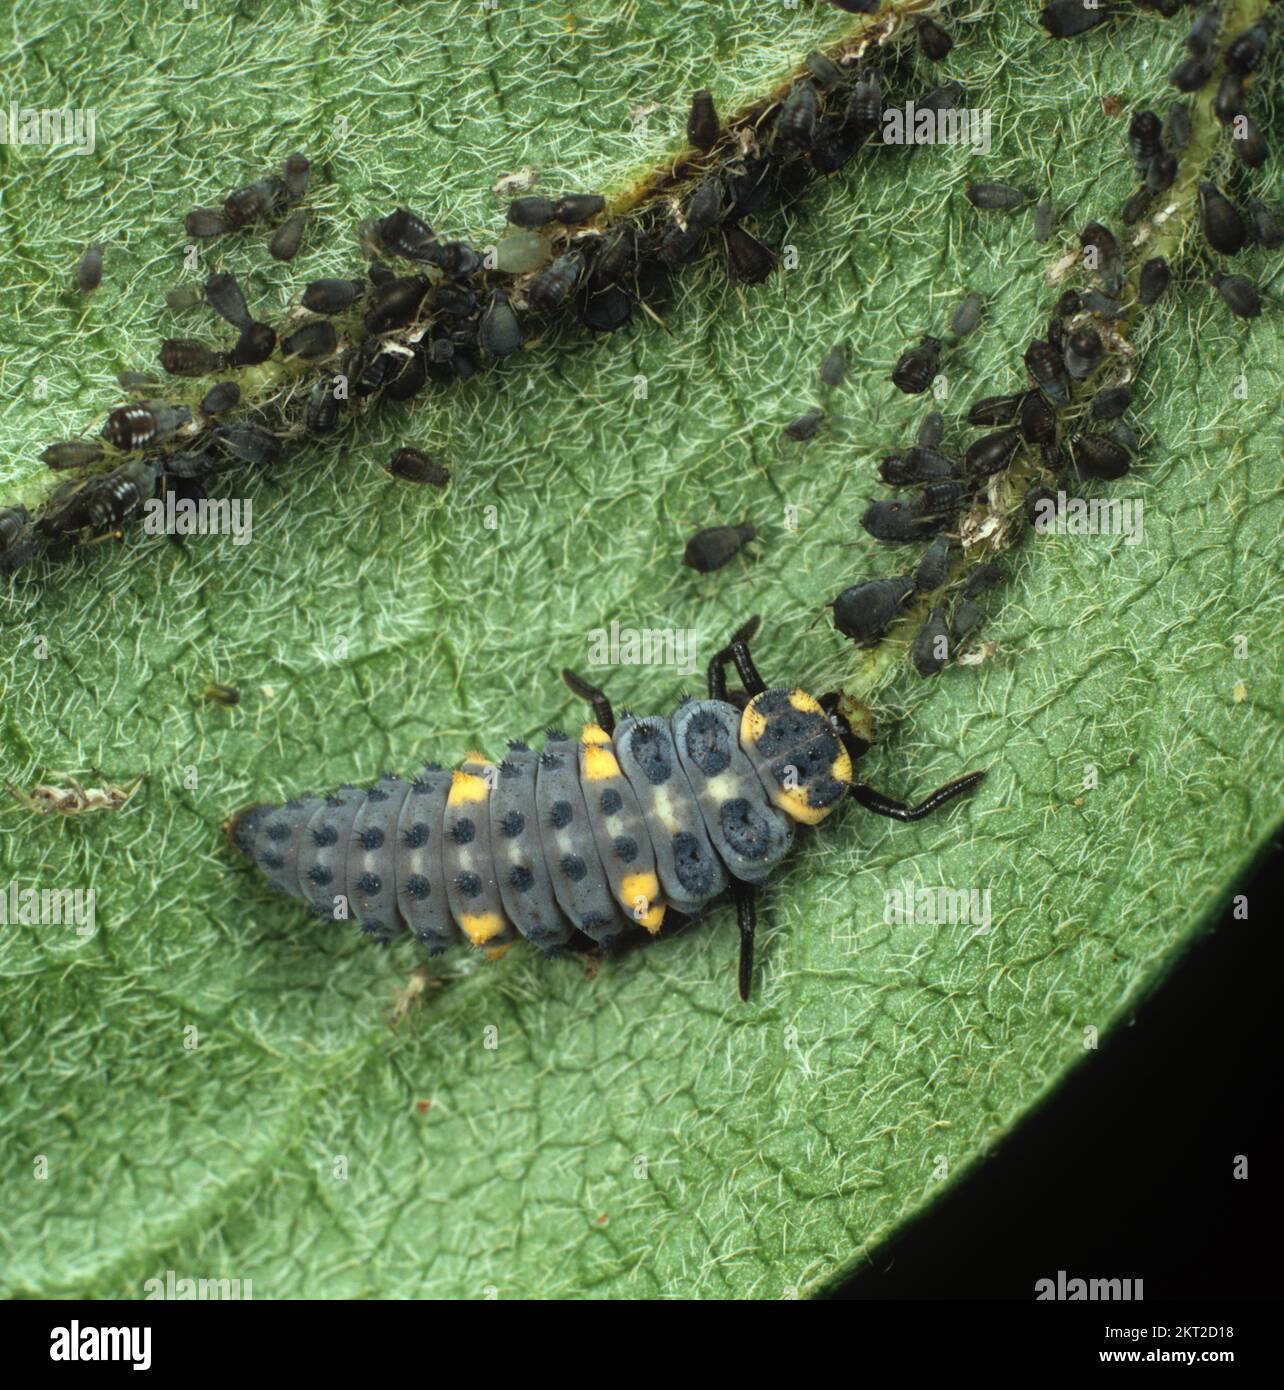 La larve d'insecte prédateur à sept taches (Coccinella septempunctata) se nourrissant des pucerons du haricot noir (Aphis fabae) Banque D'Images